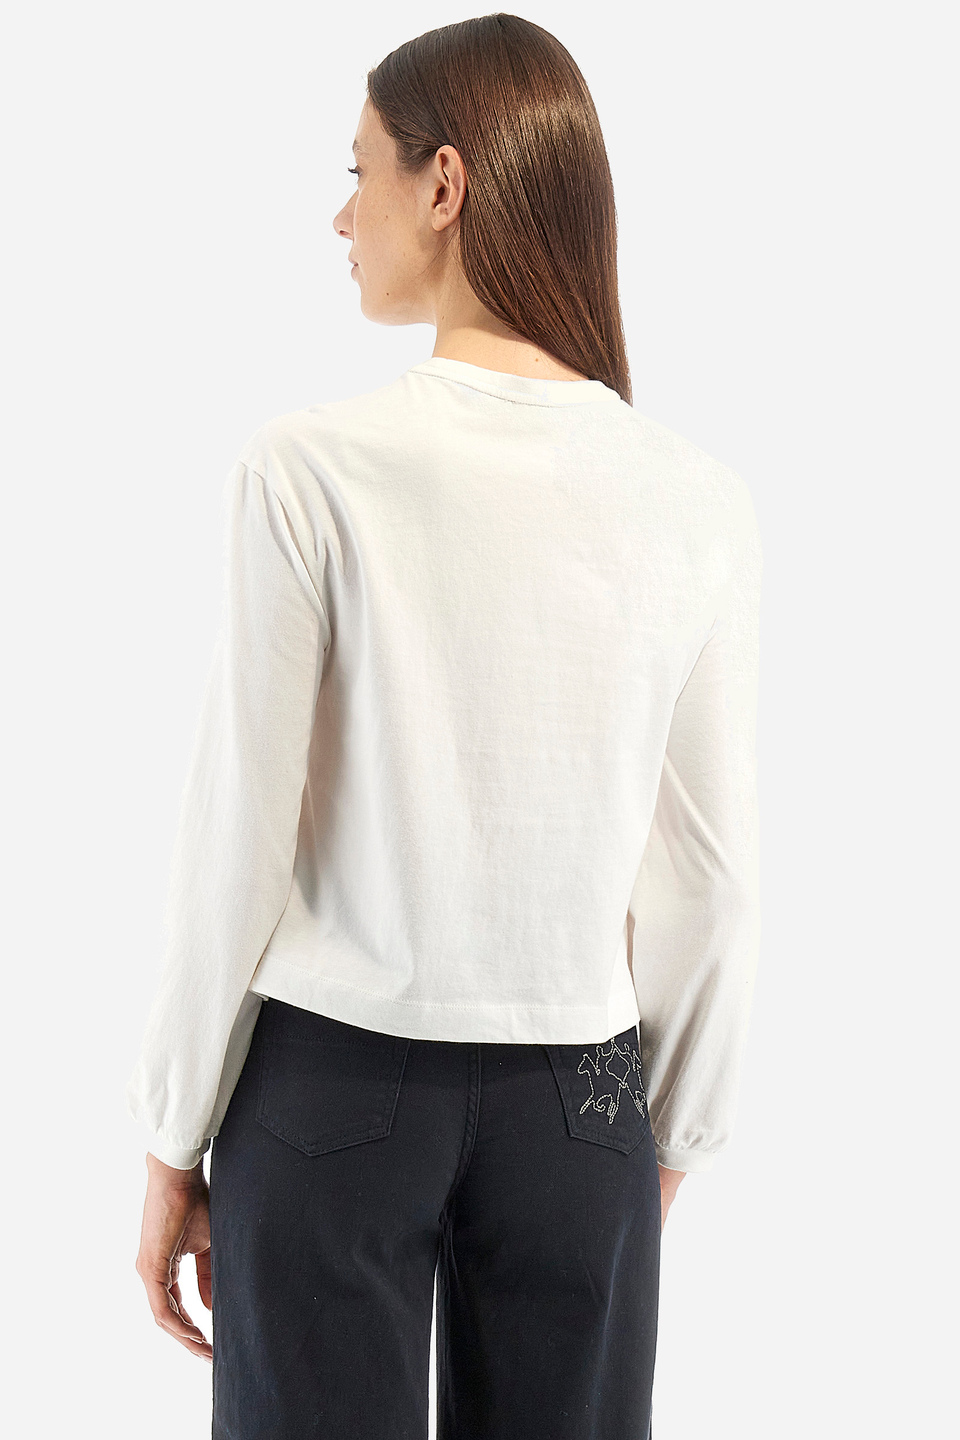 Women's regular fit T-shirt - Willetta | La Martina - Official Online Shop